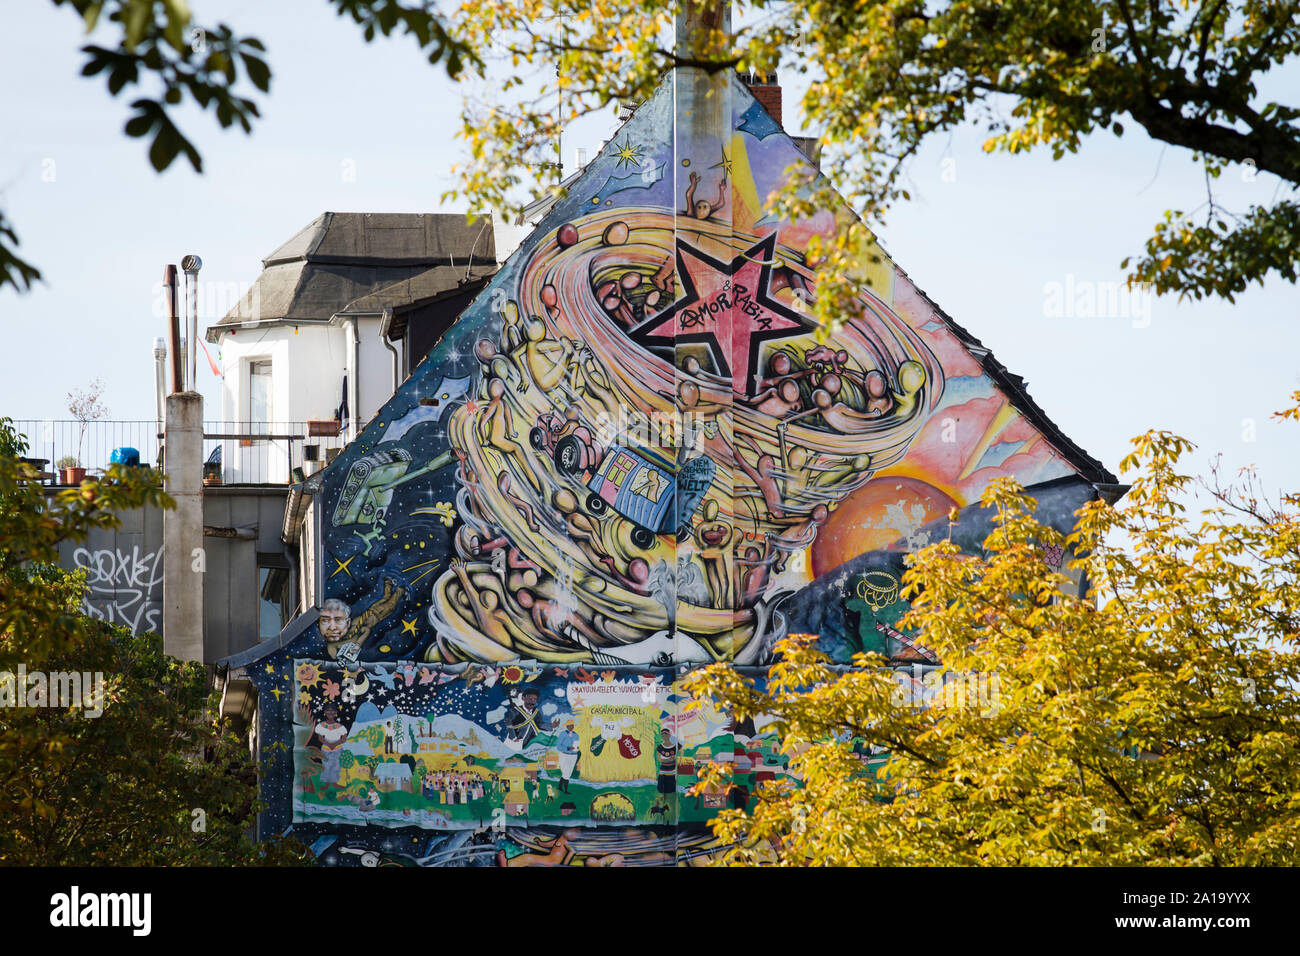 Peinture murale sur un bâtiment résidentiel sur Ludolf Camphausen Street, Cologne, Allemagne Wandbild une einem Wohnhaus an der Ludolf-Camphausen-Strasse, Koeln, deu Banque D'Images